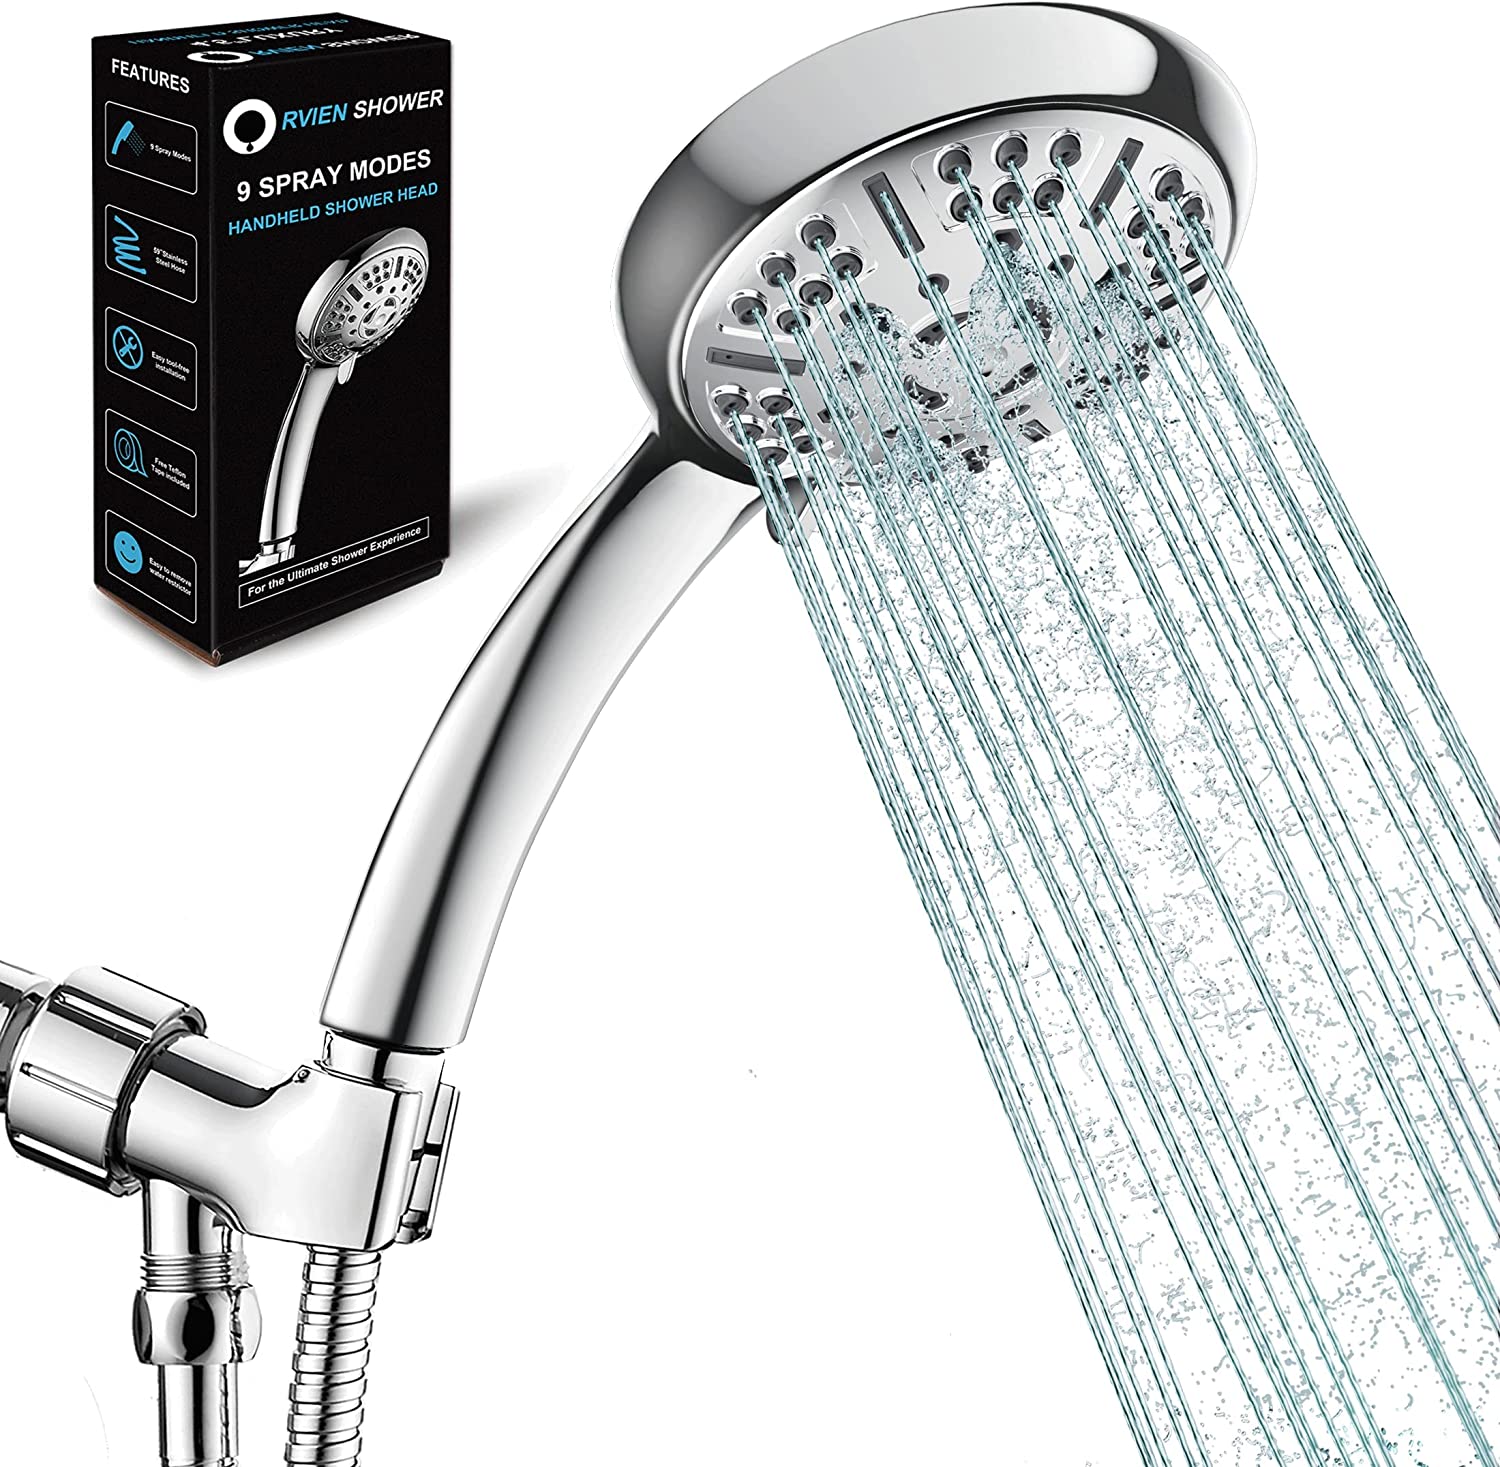 RVIEN SHOWER Handheld shower head for low water pressure